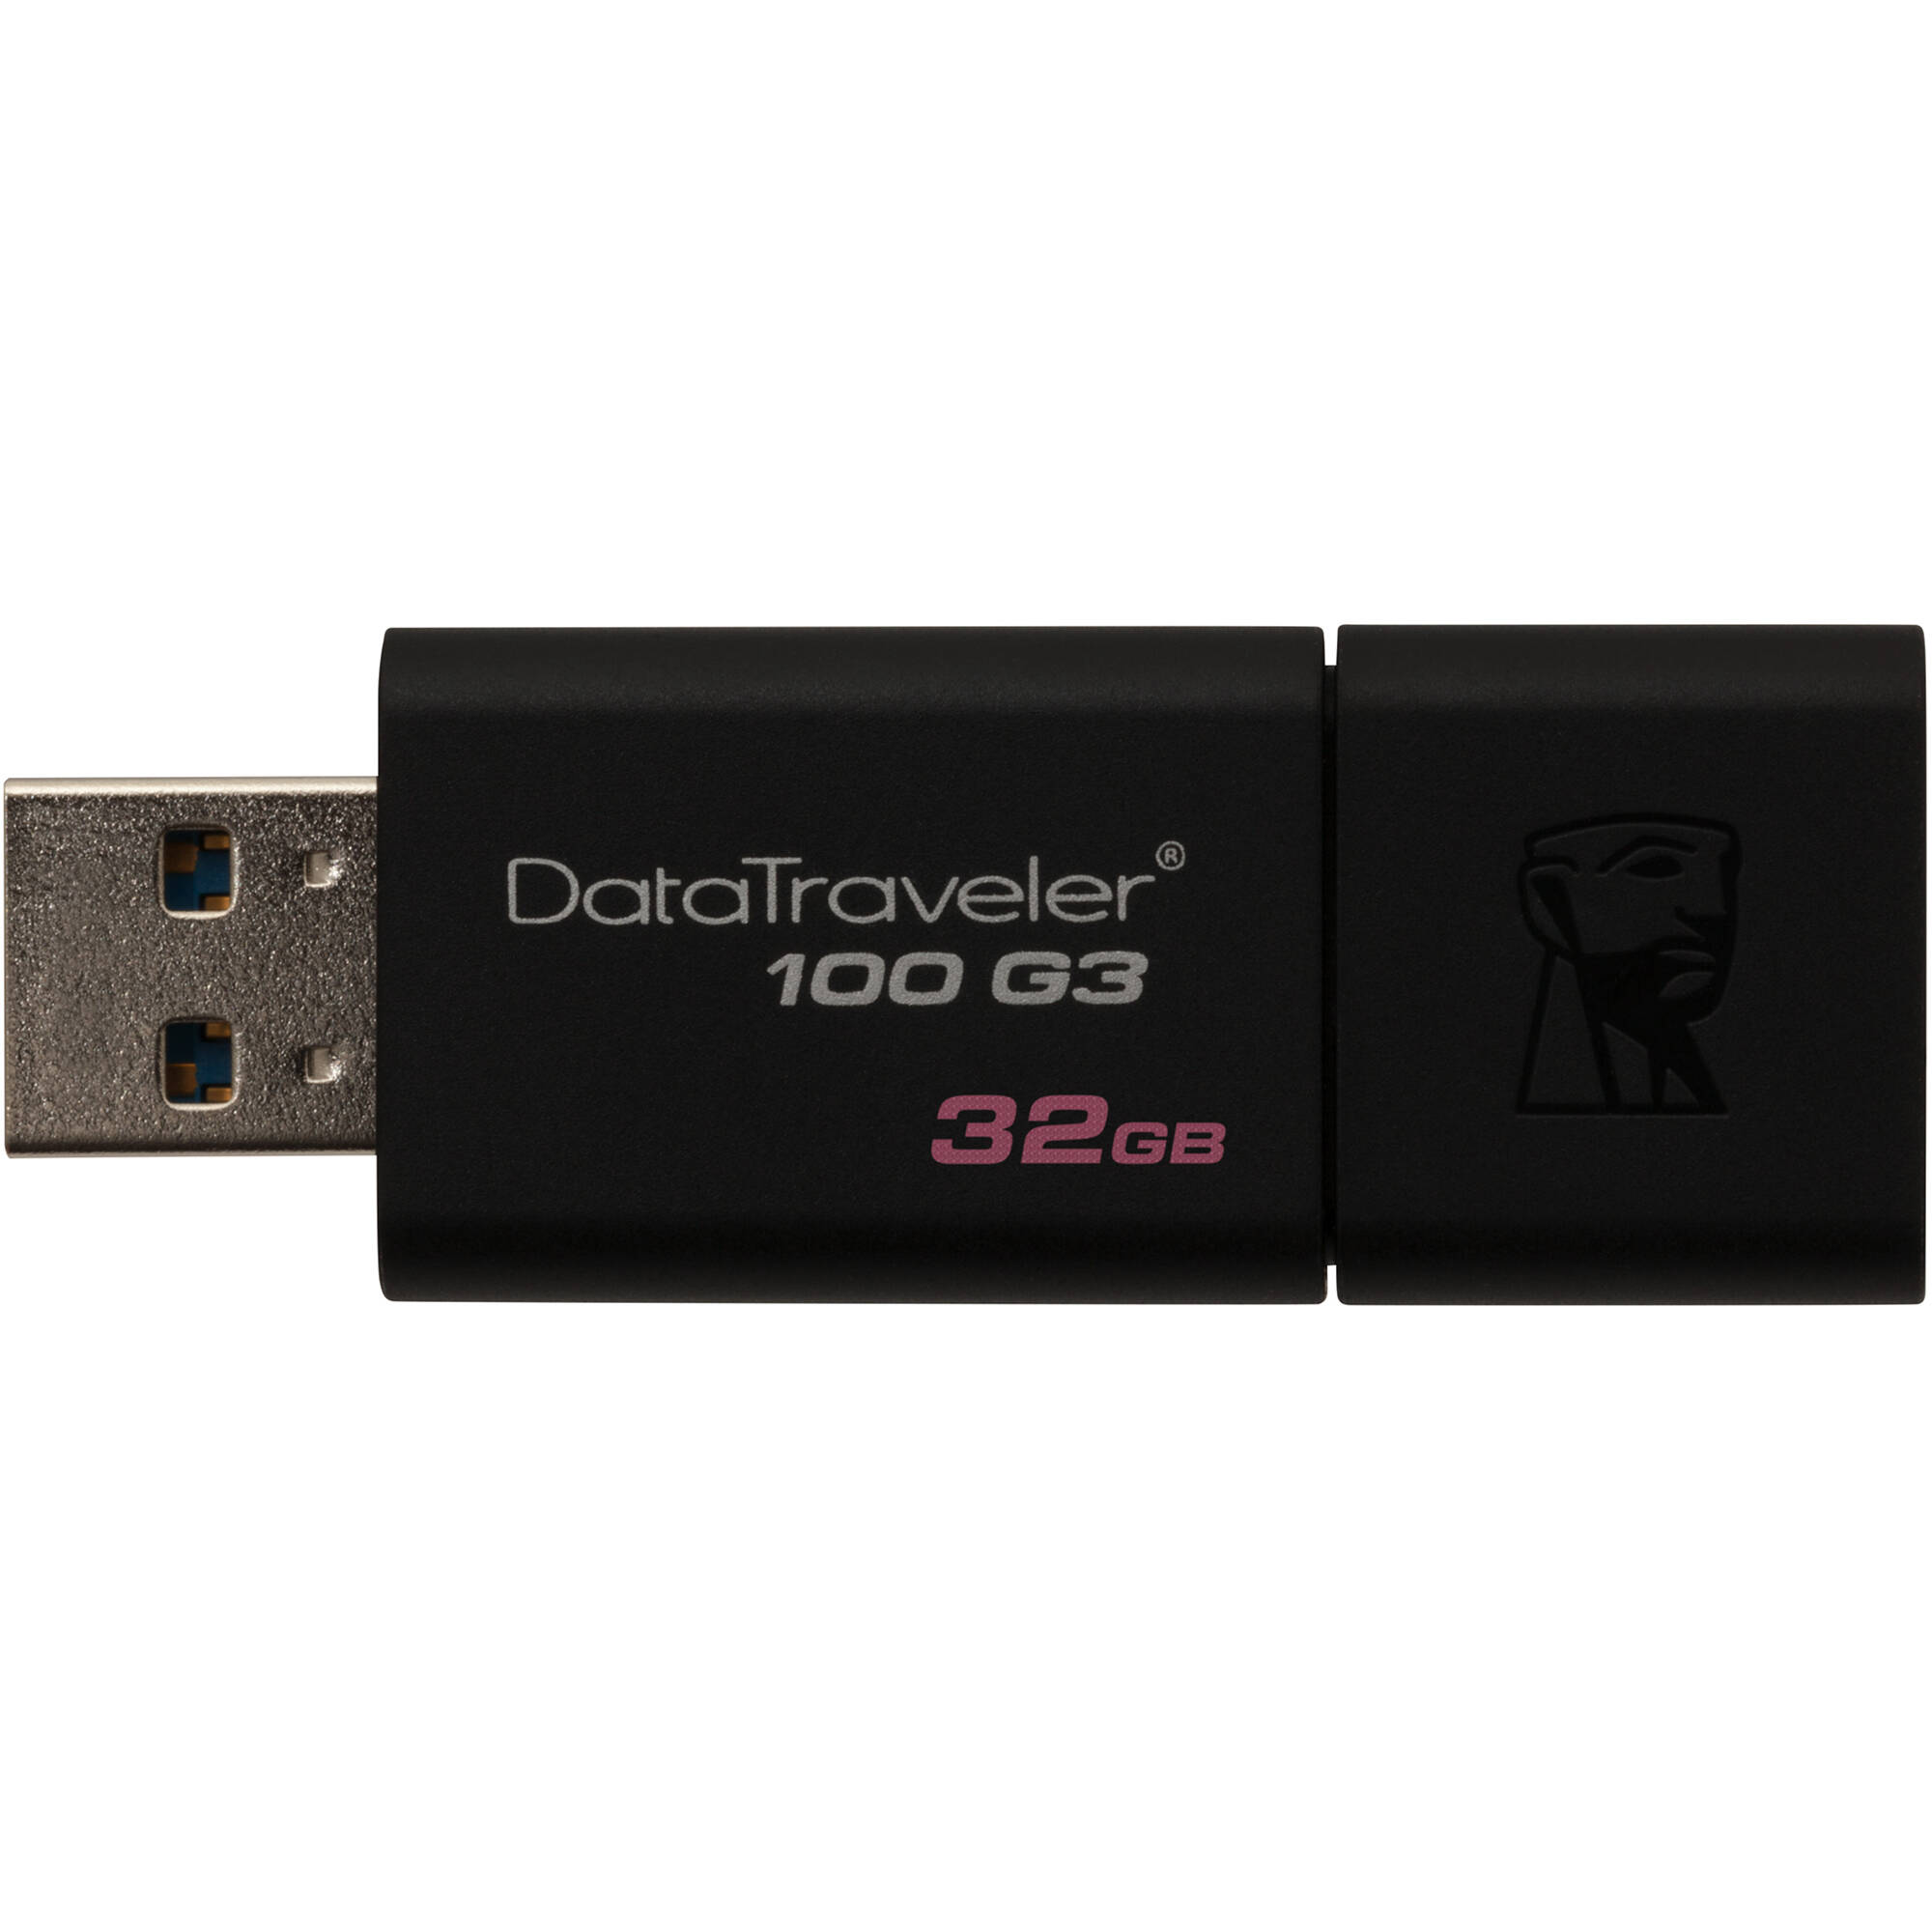 Kingston 128GB USB 3.0 DataTraveler 100 G3 flash drive